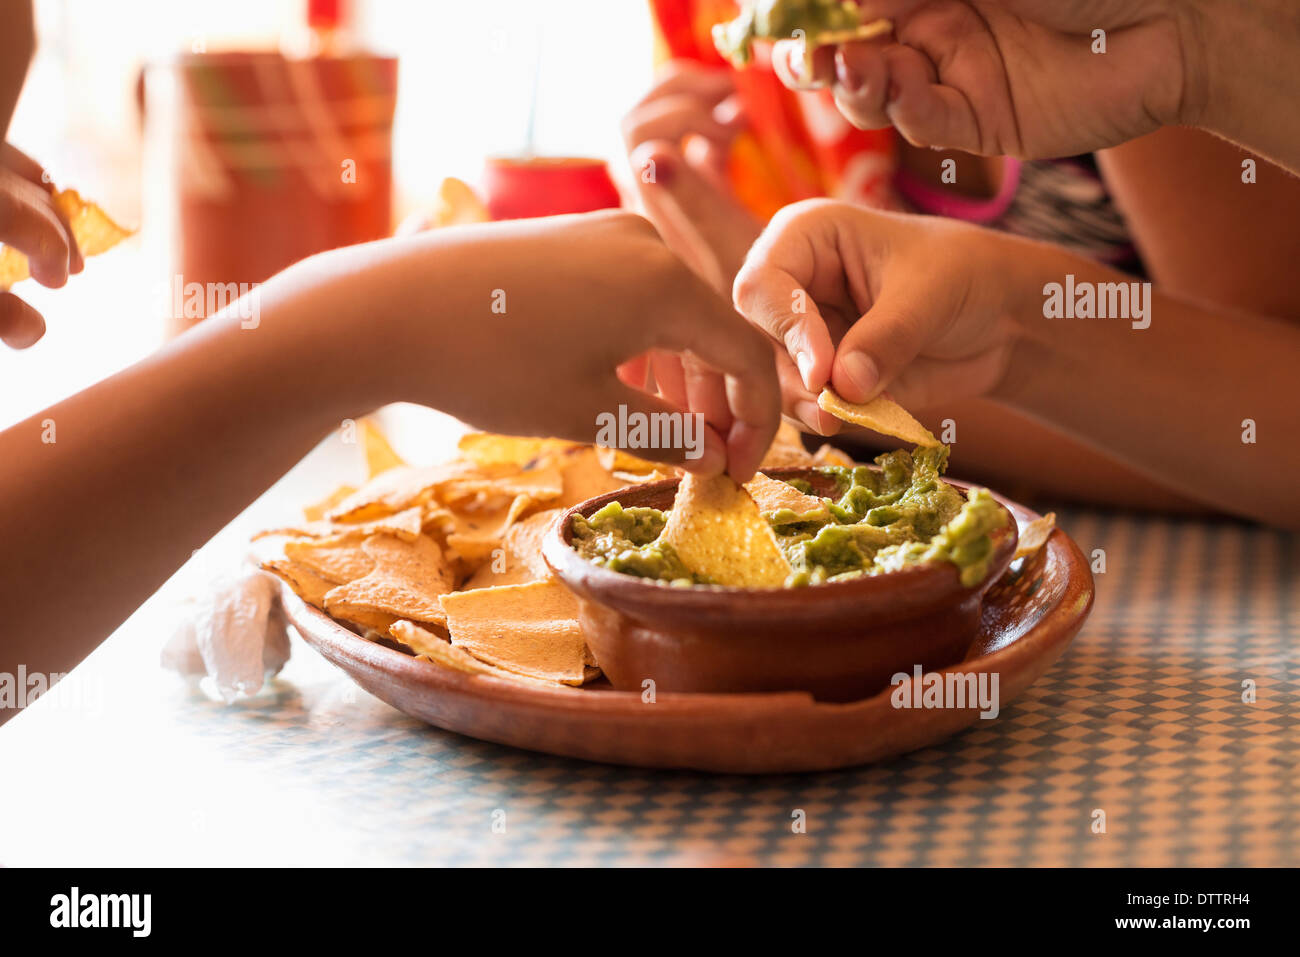 Les enfants de manger des frites et guacamole Banque D'Images